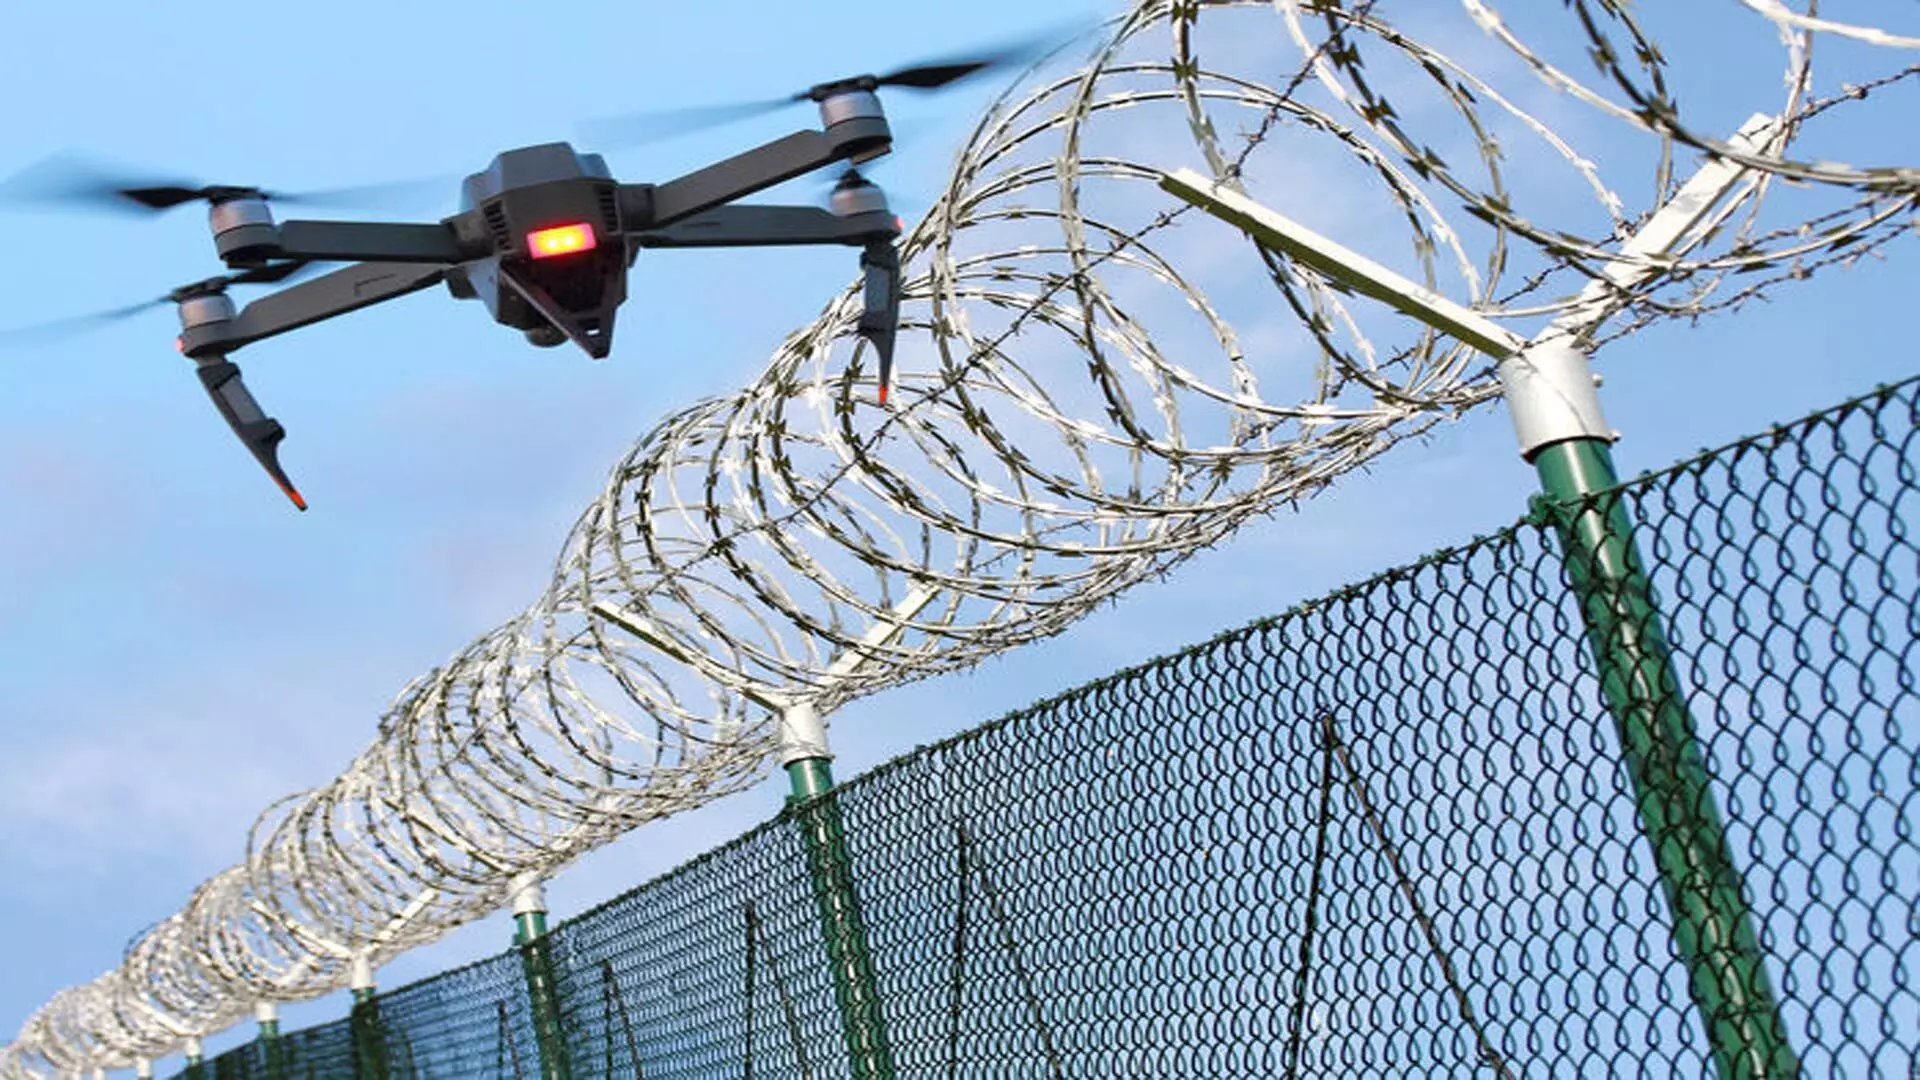 तरनतारन में अंतरराष्ट्रीय सीमा के पास ड्रोन बरामद